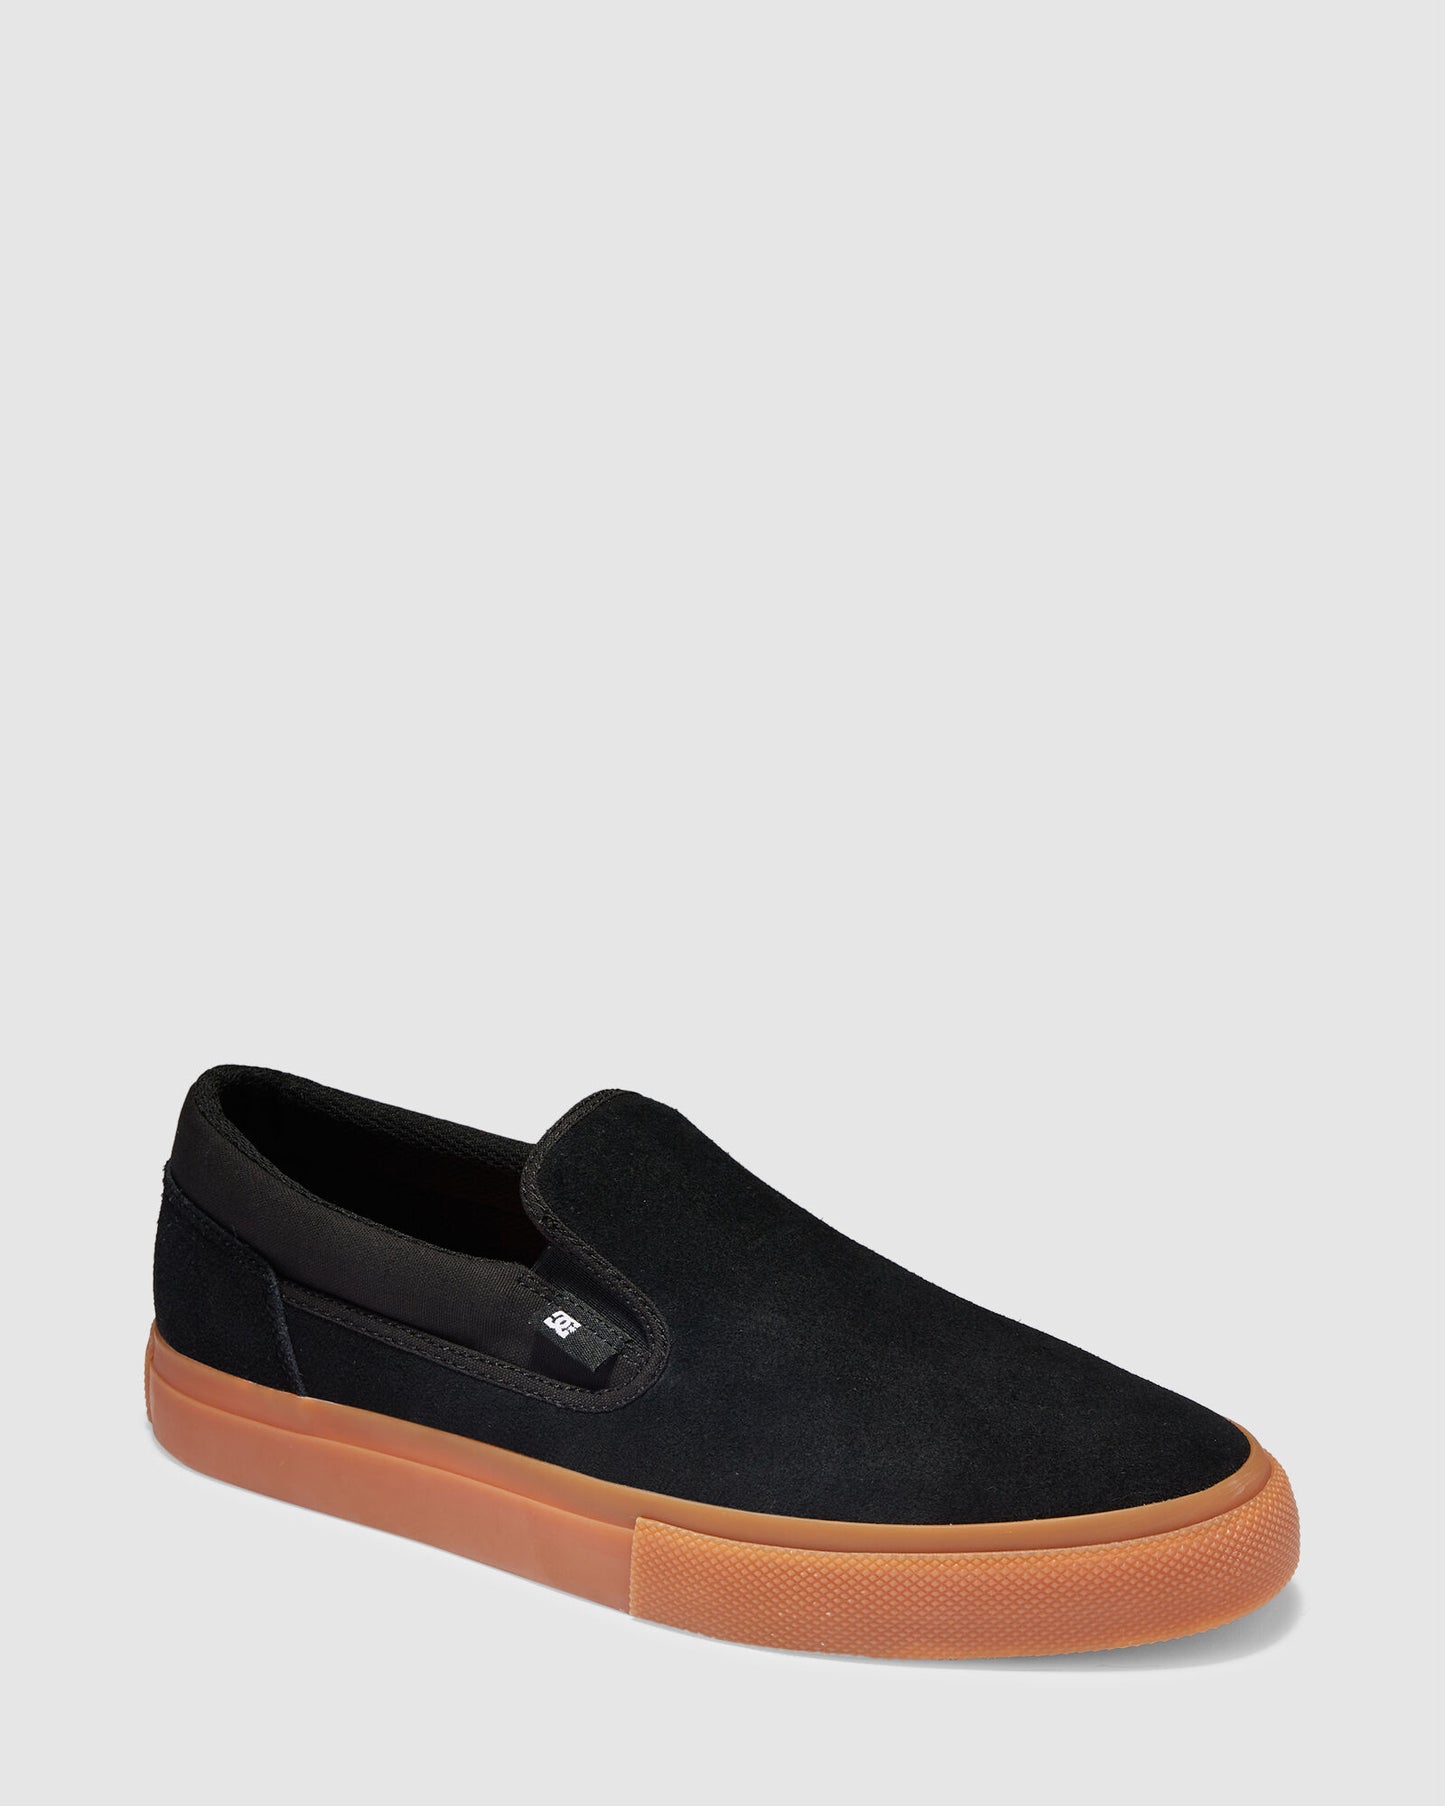 Dc Shoes Manual LE Slip On Black/Gum